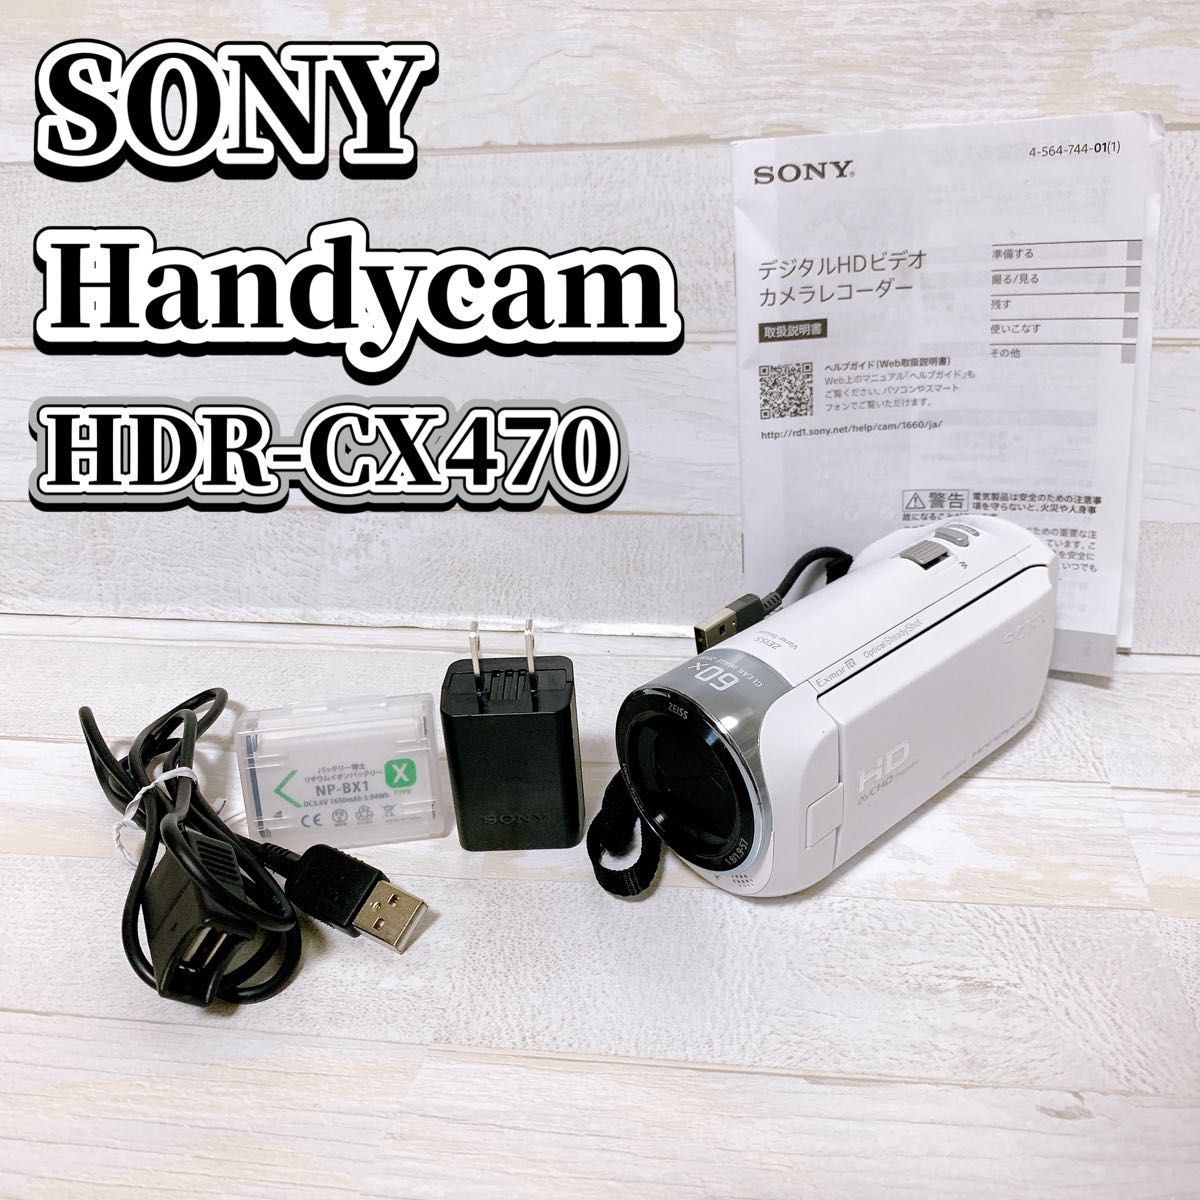 SONY ビデオカメラ ハンディカム HDR-CX470 ホワイト  ソニー デジタル ビデオカメラ handycam